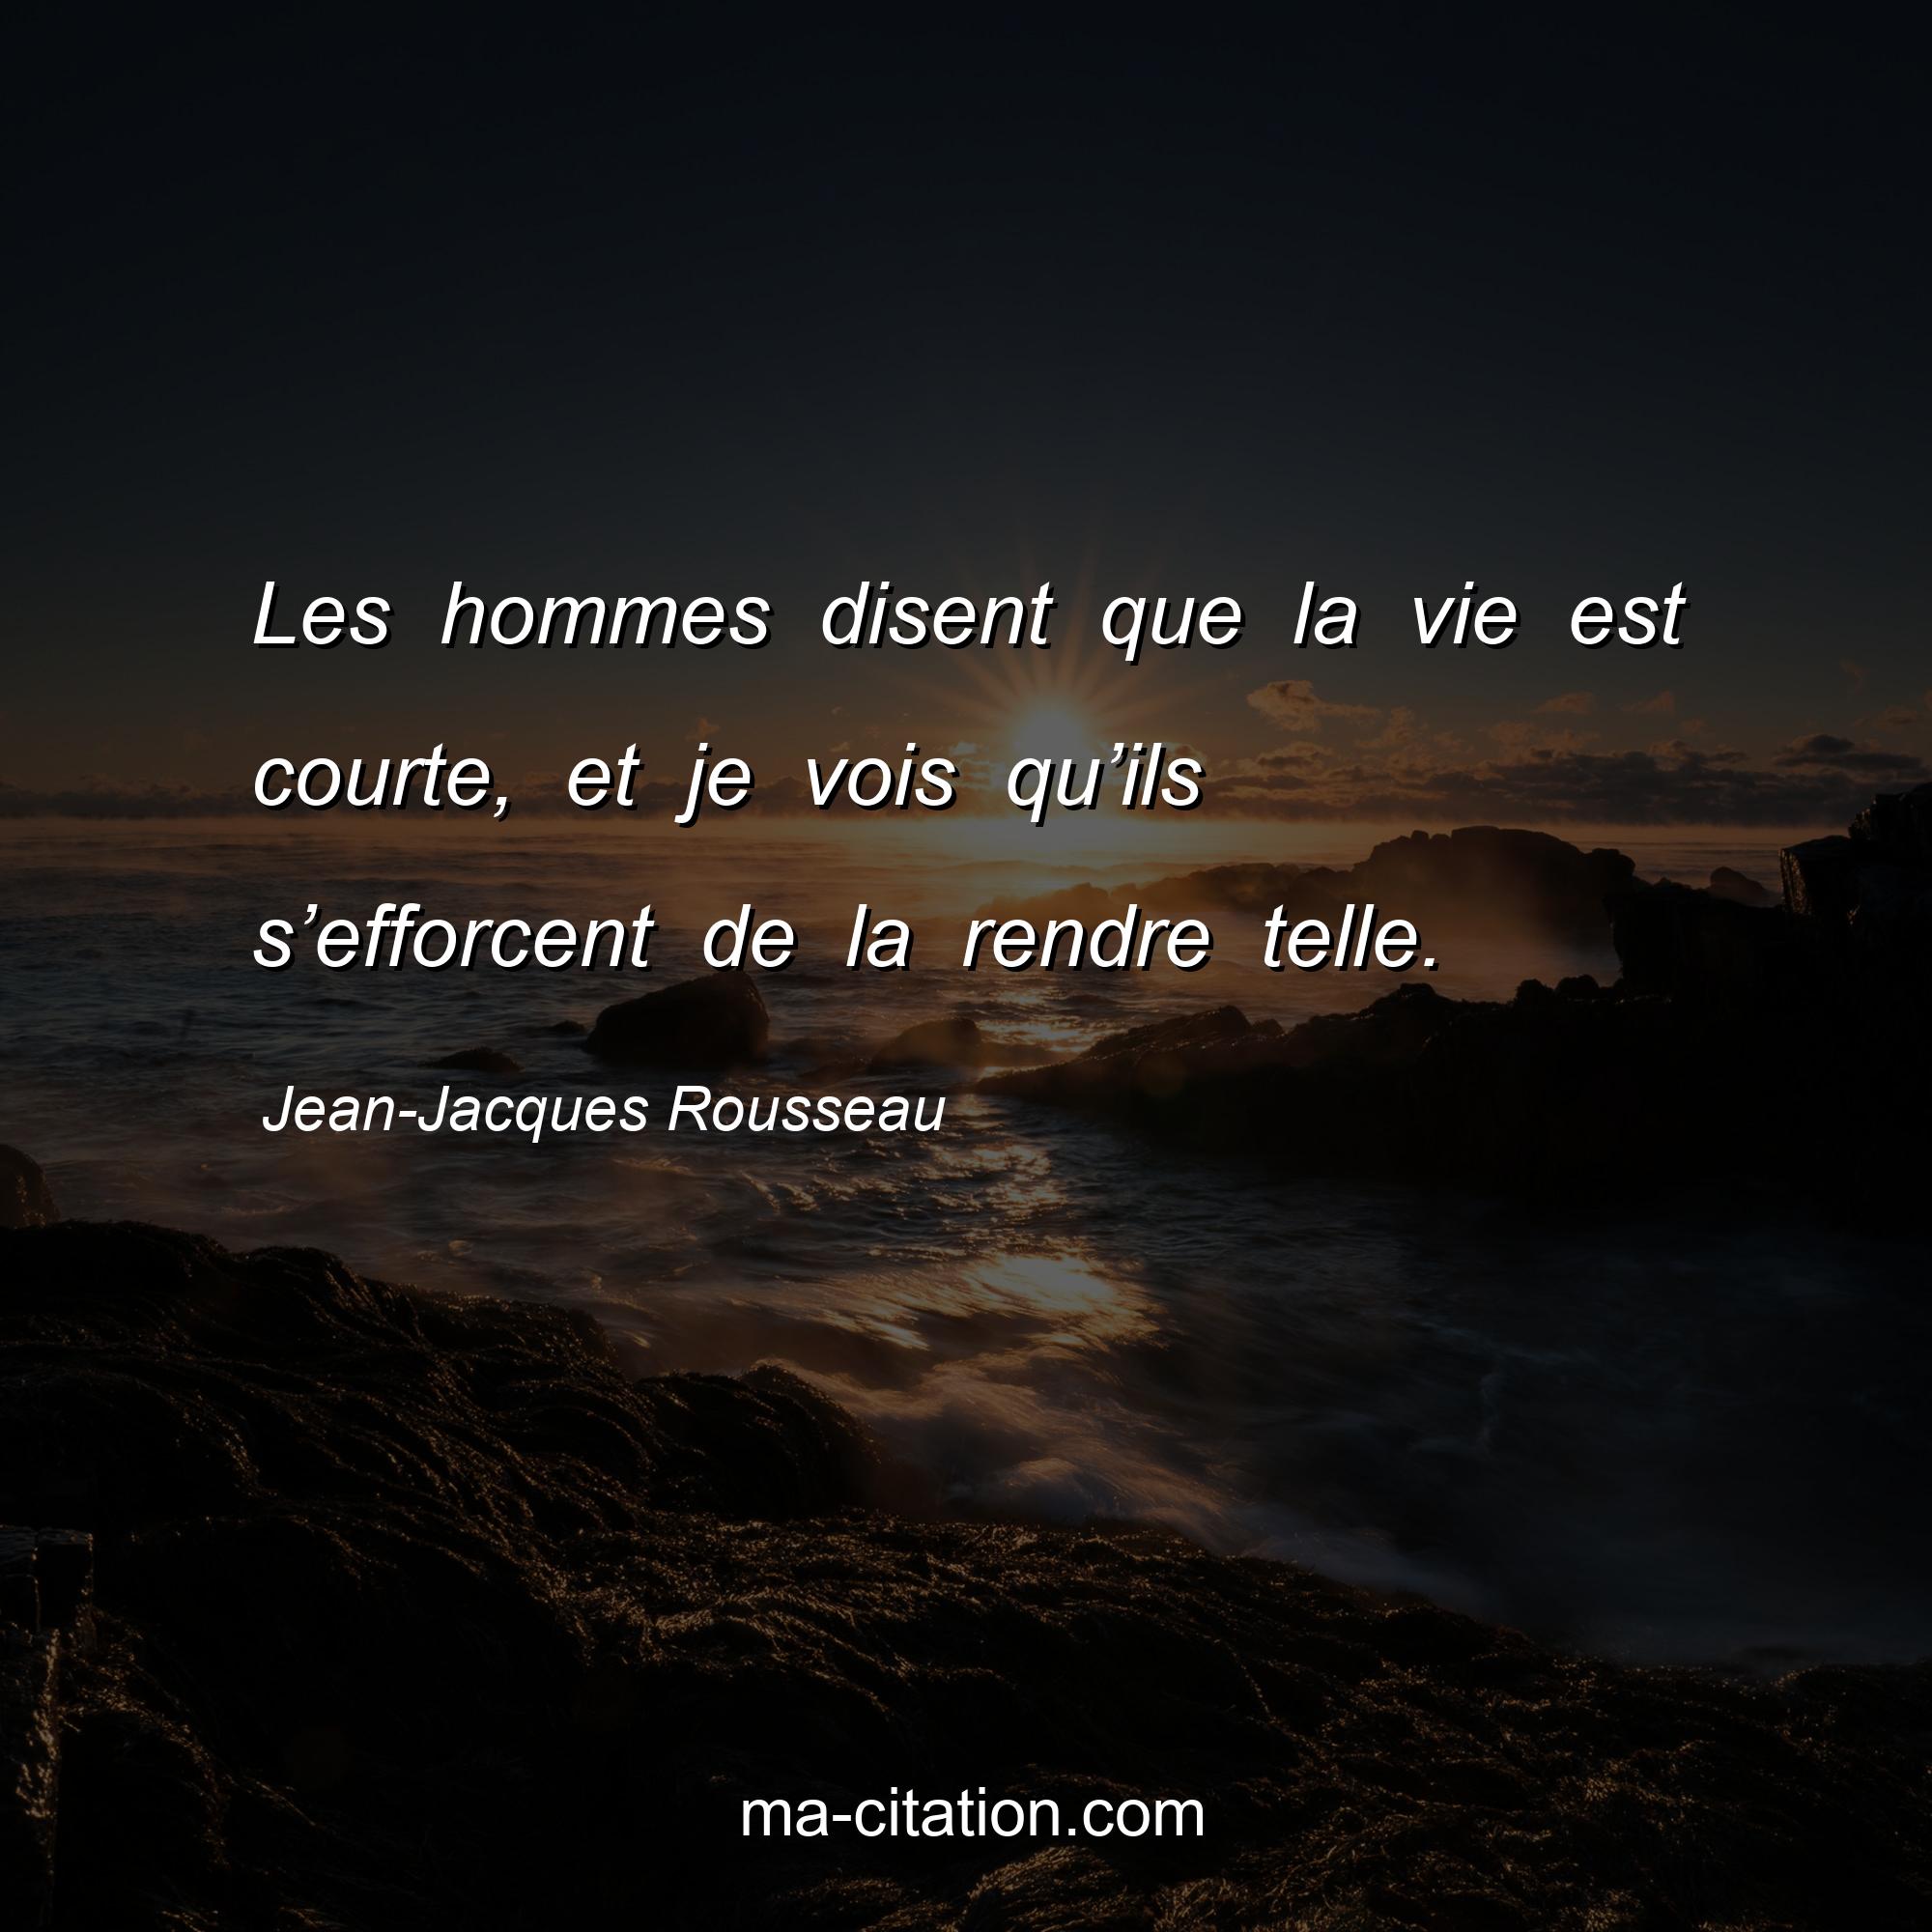 Jean-Jacques Rousseau : Les hommes disent que la vie est courte, et je vois qu’ils s’efforcent de la rendre telle.